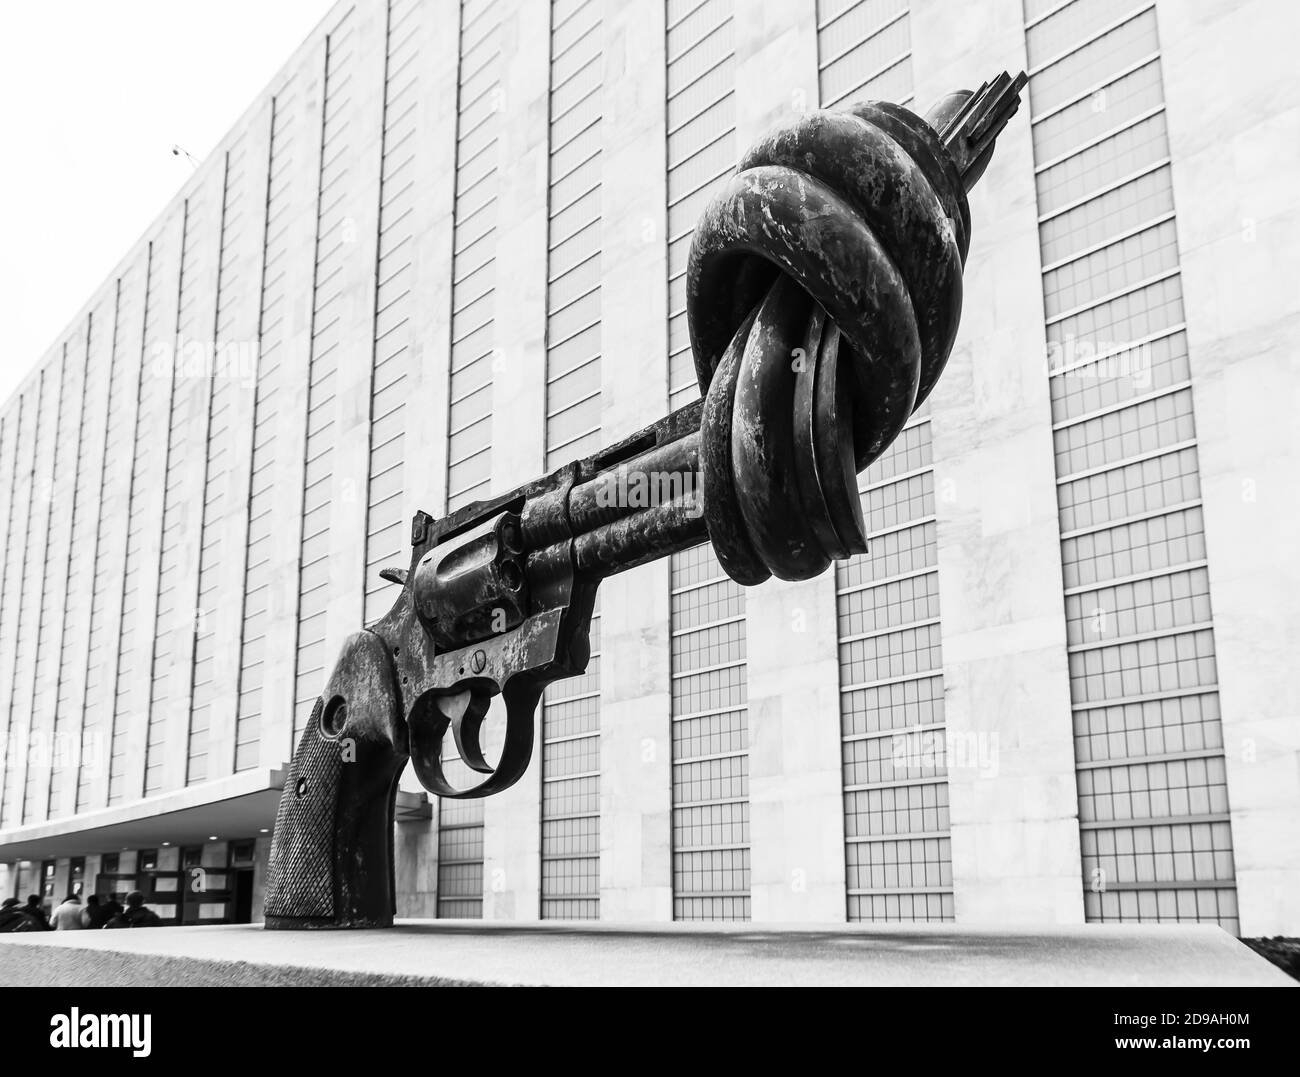 NUEVA YORK, EE.UU. - Feb 20, 2019: Non-violence es una escultura de bronce del artista sueco Carl Reutersward de un gran revólver de Colt Python .357 Magnum w Foto de stock